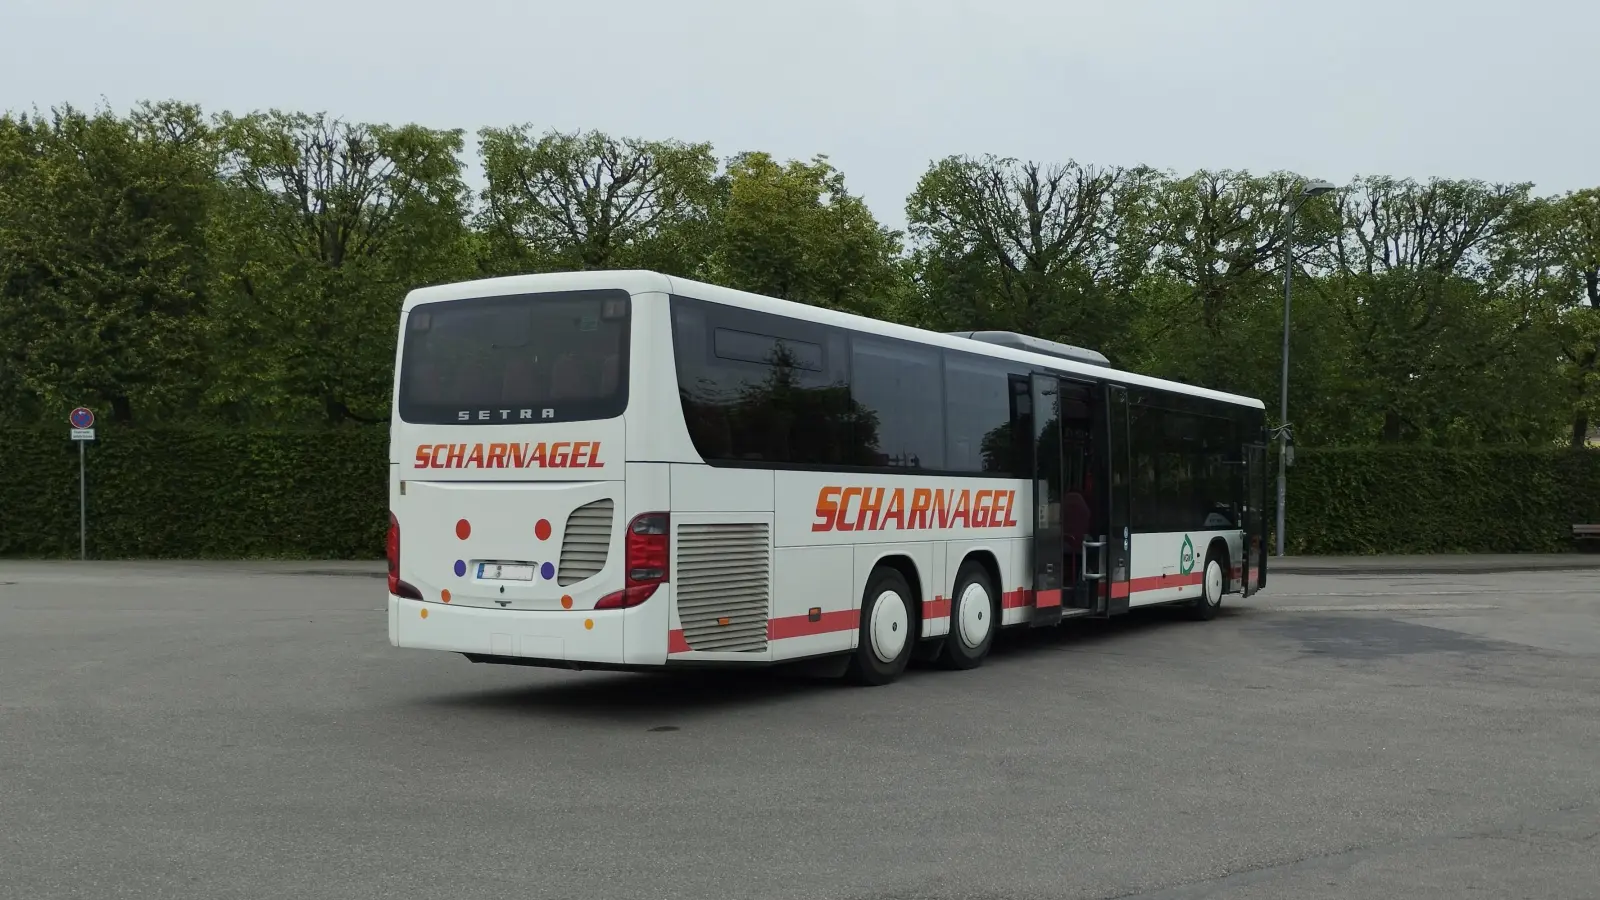 Noch fahren die Busse der Firma Scharnagel durch die Stadt und den Landkreis Ansbach. Ab August werden sie aber aus dem Straßenbild verschwinden. (Foto: Thomas Schaller)